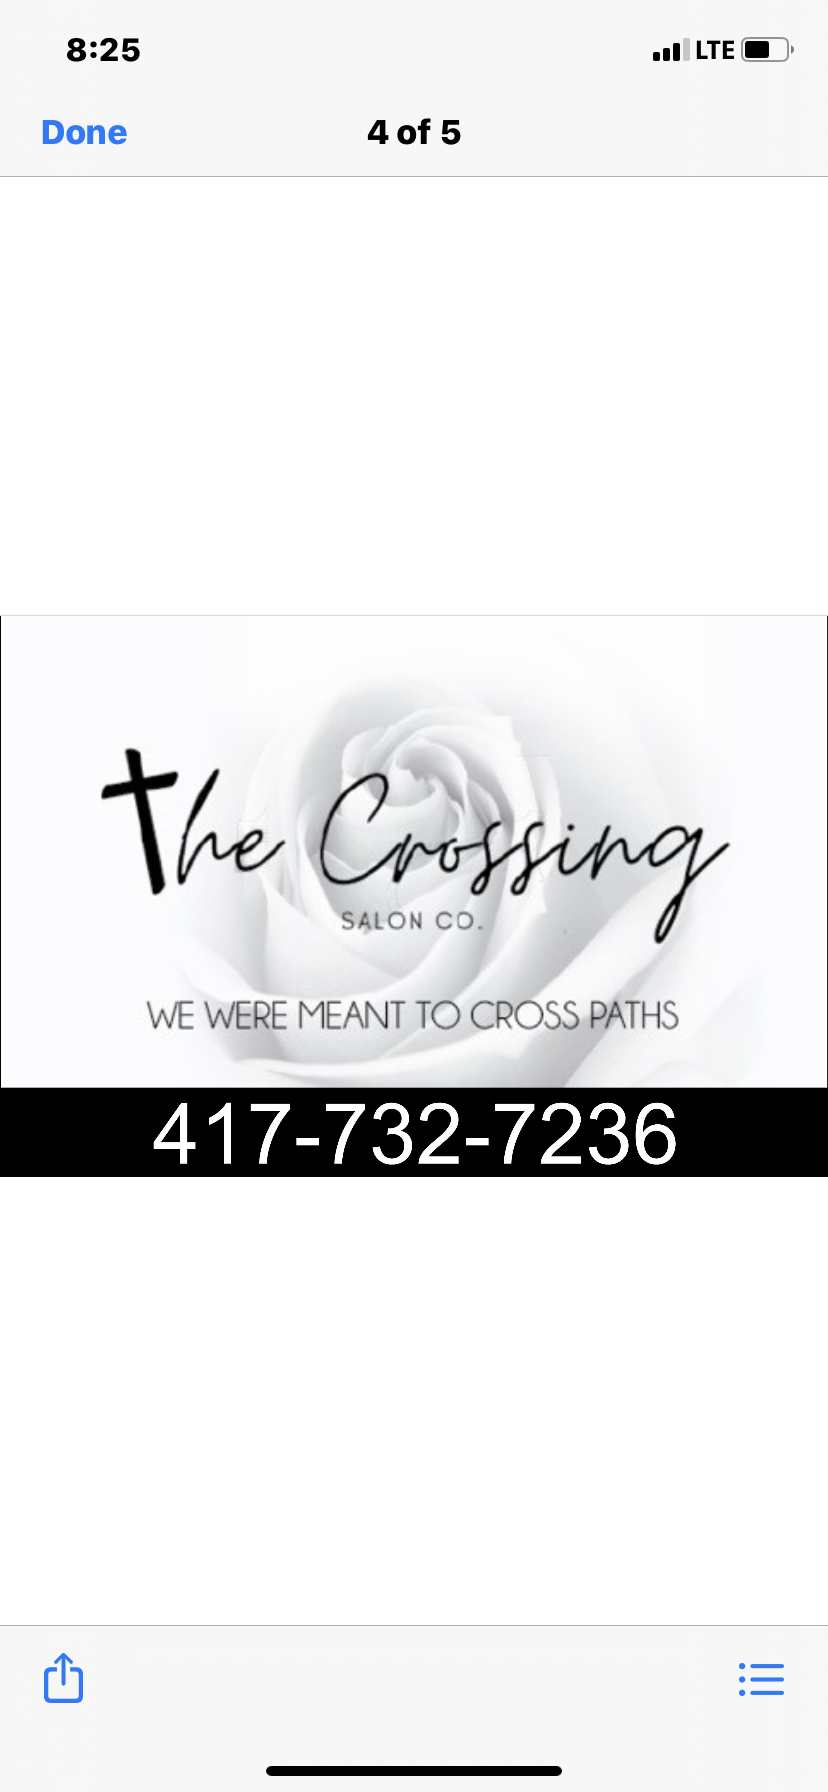 The Crossing Salon Co. 754 E Hines St, Republic Missouri 65738